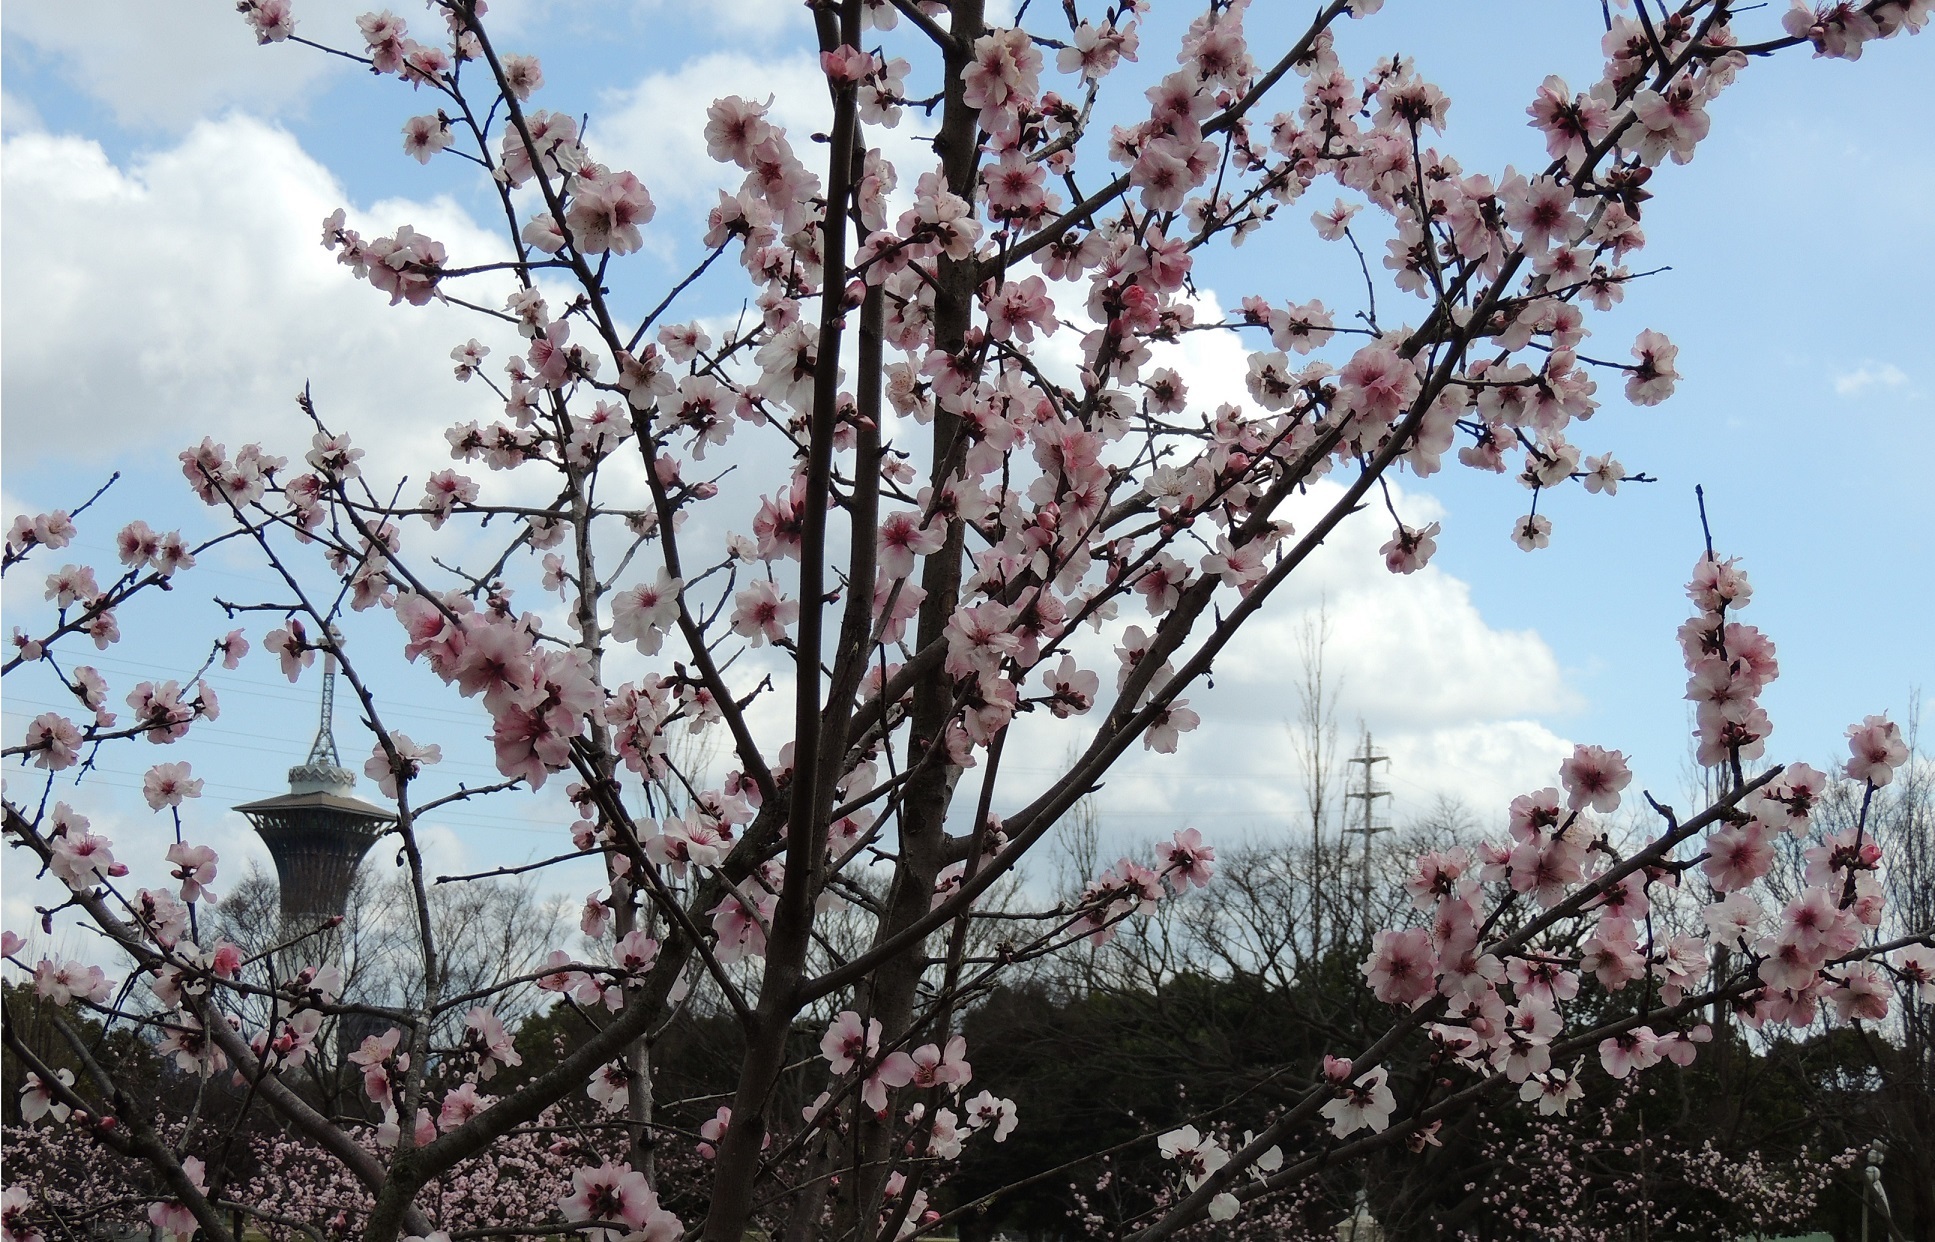 大阪市鶴見区 鶴見緑地の アーモンドの花 が咲きました 令和2年春 コミュニティ まちづくり わがまちのできごと